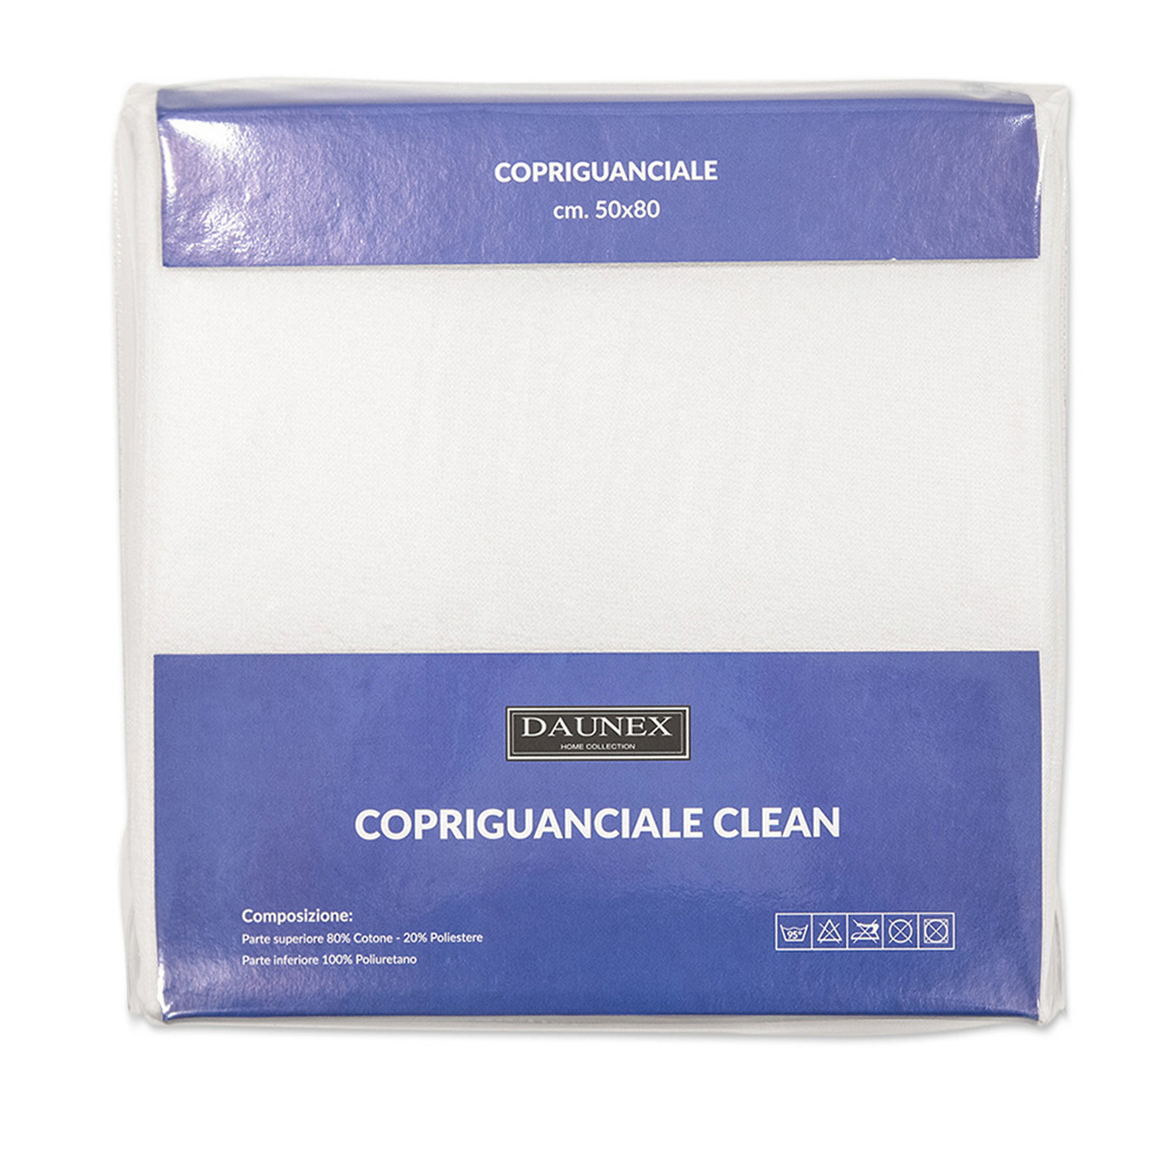 Coppia Copriguanciale CLEAN con cerniera by Daunex